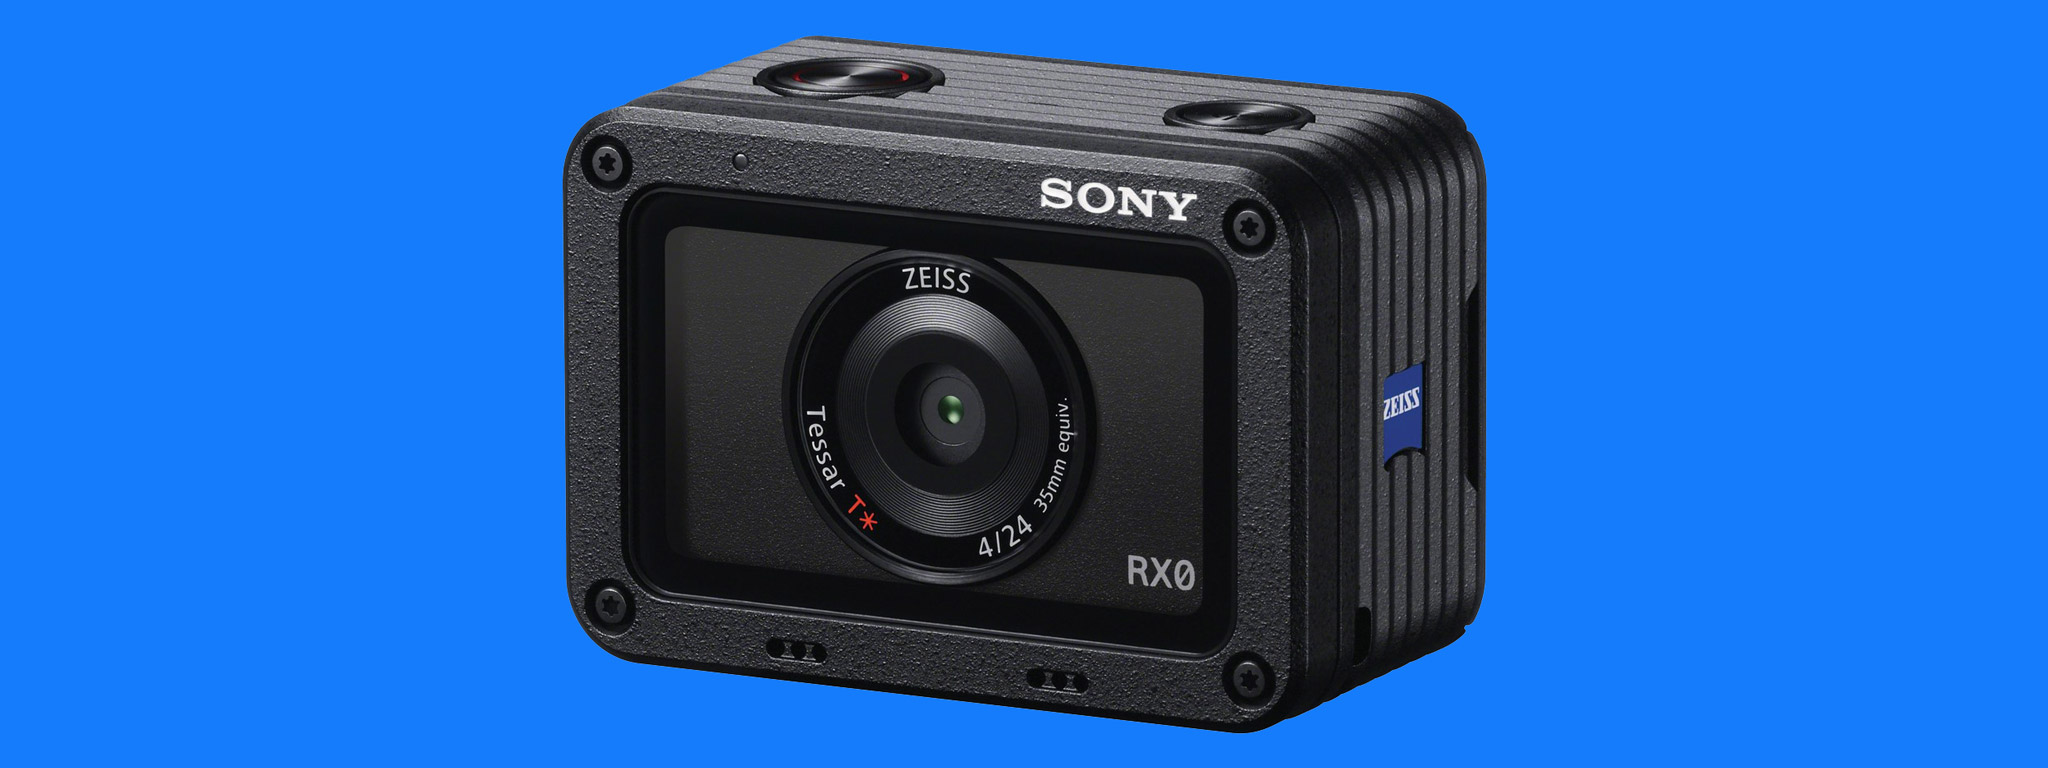 [IFA 2017] Sony RX0: máy quay 4K bền + nhỏ gọn, có thể ghép thành bộ nhiều chiếc, 700$